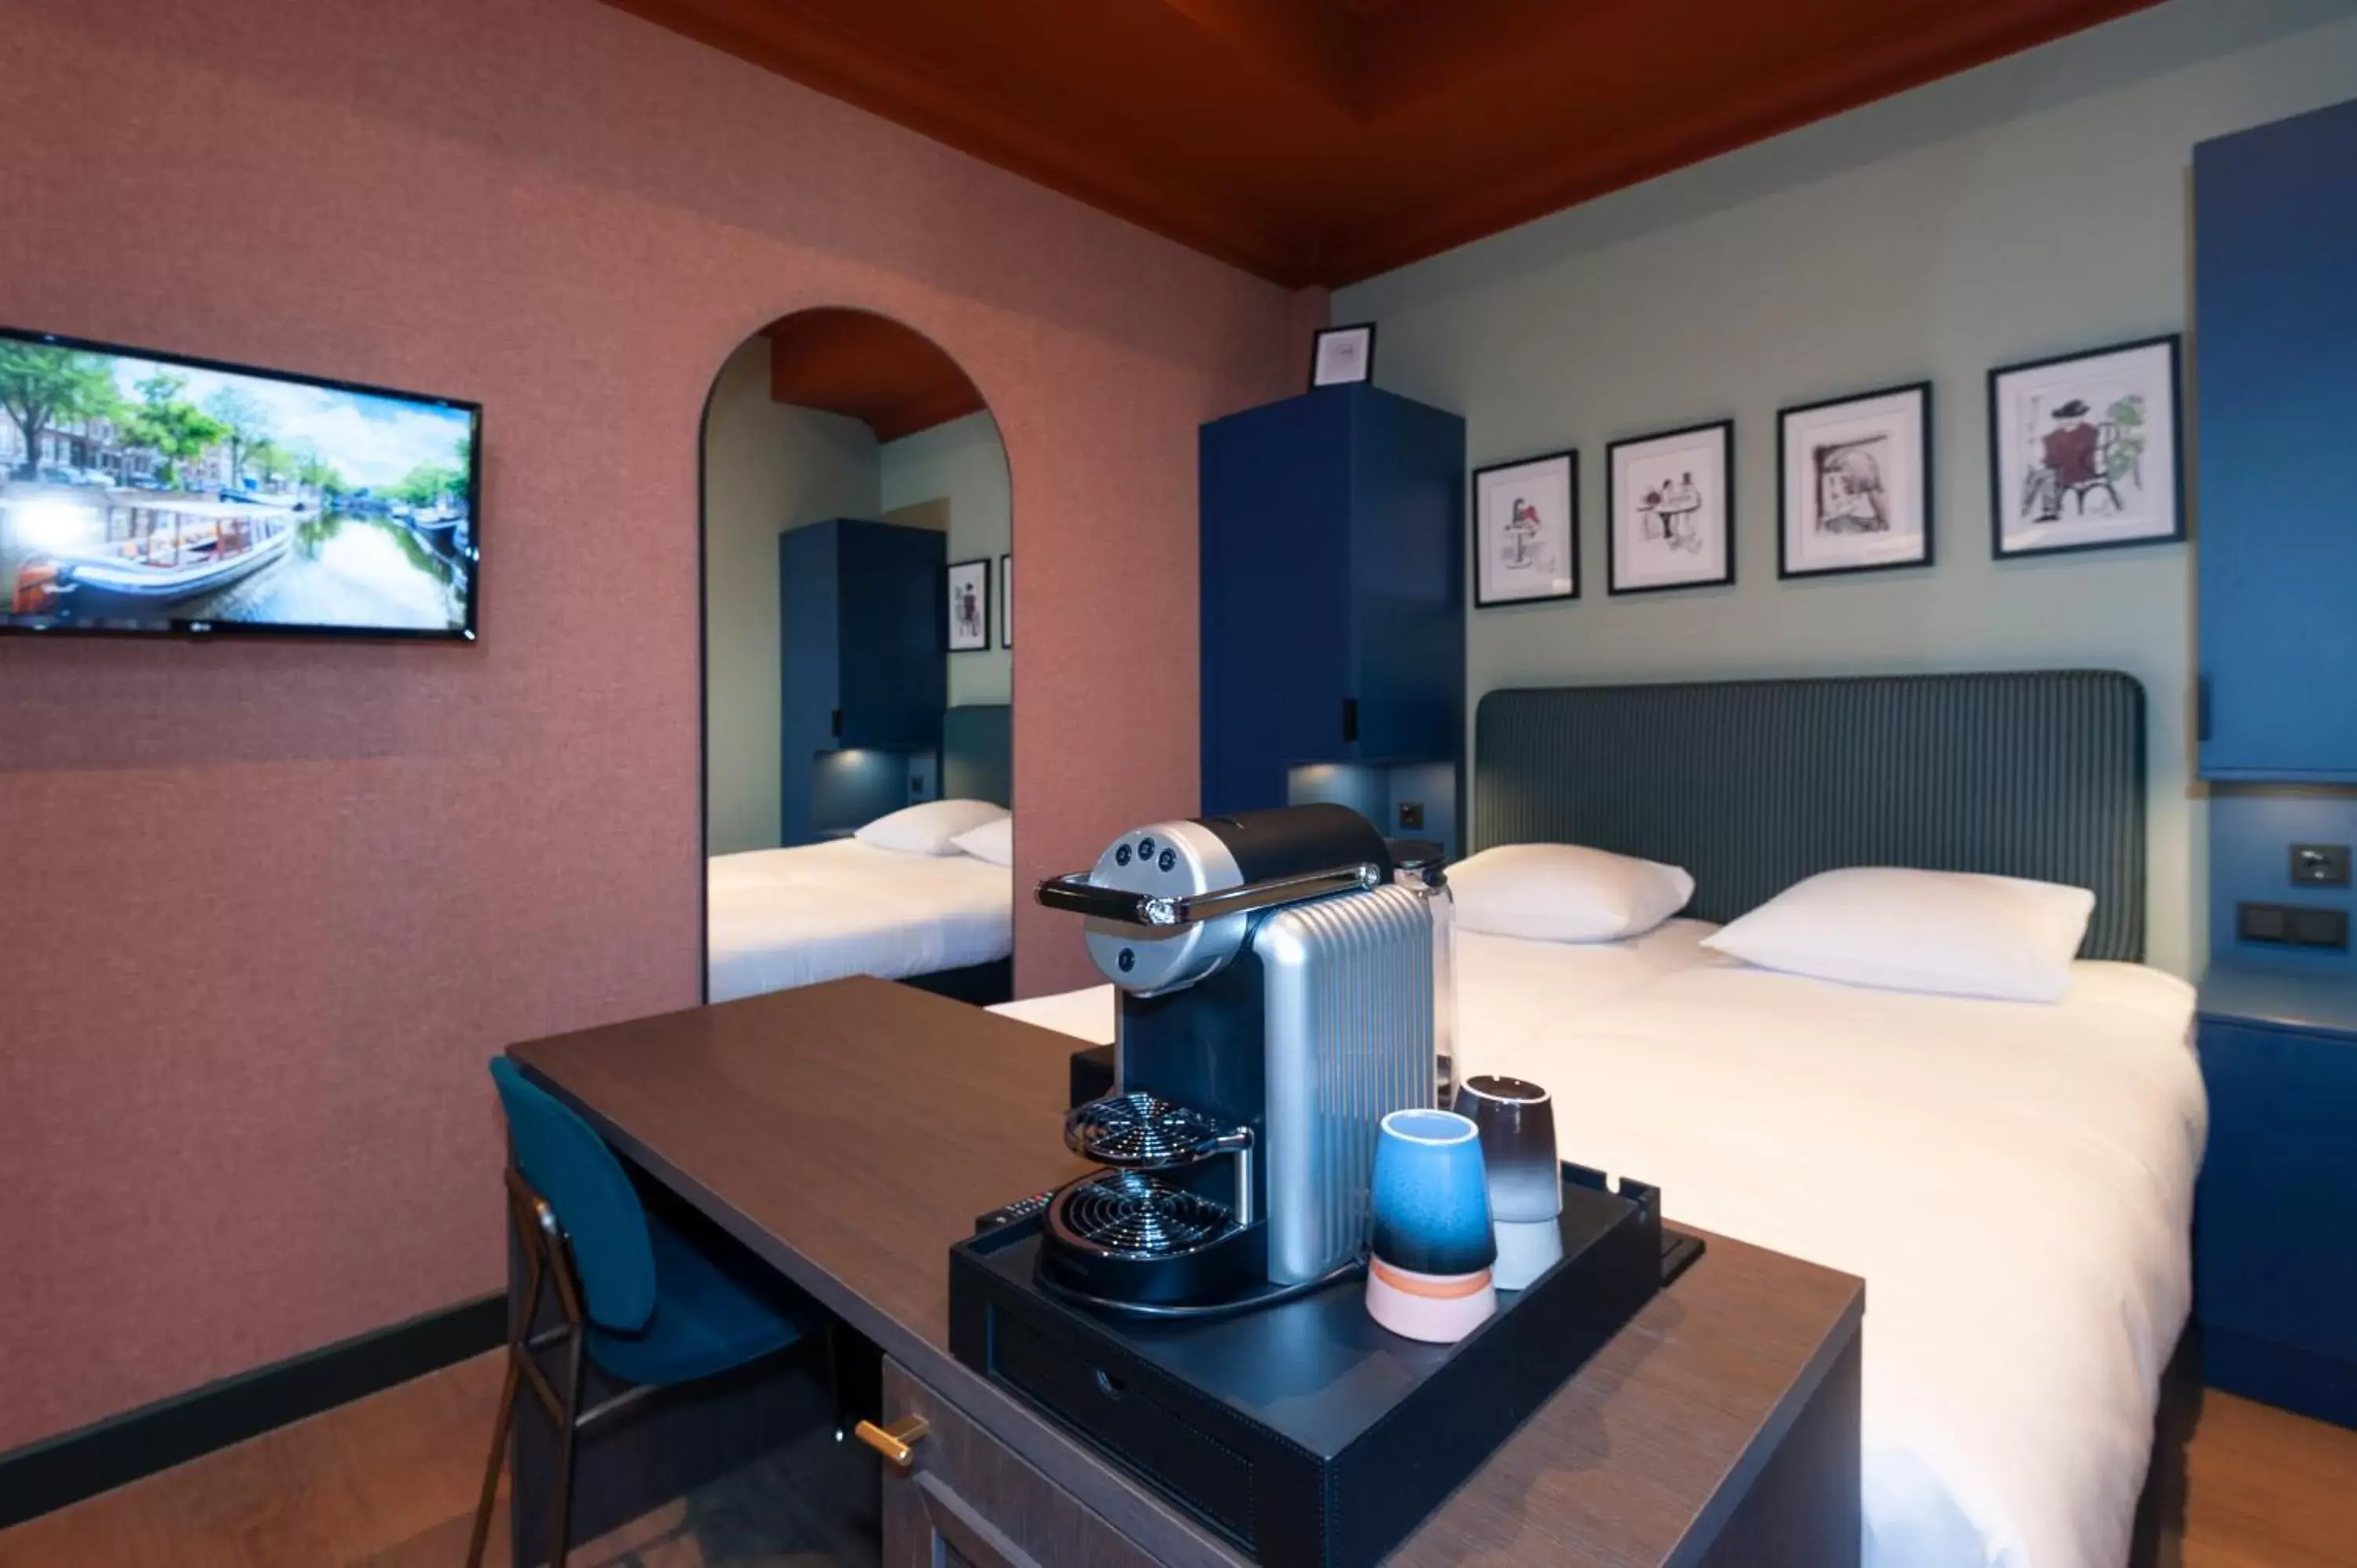 Bedroom in Hotel Nicolaas Witsen